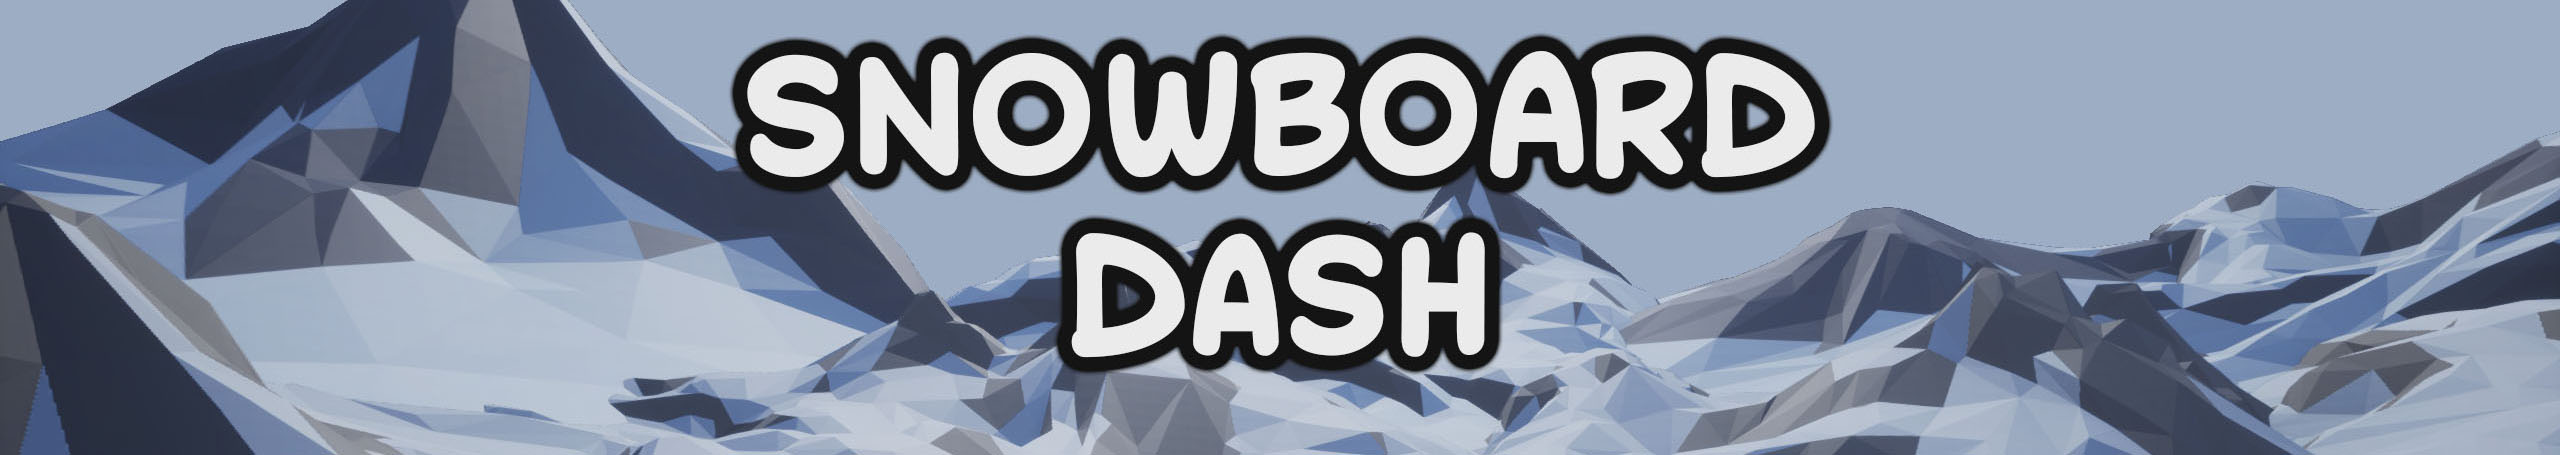 Snowboard Dash